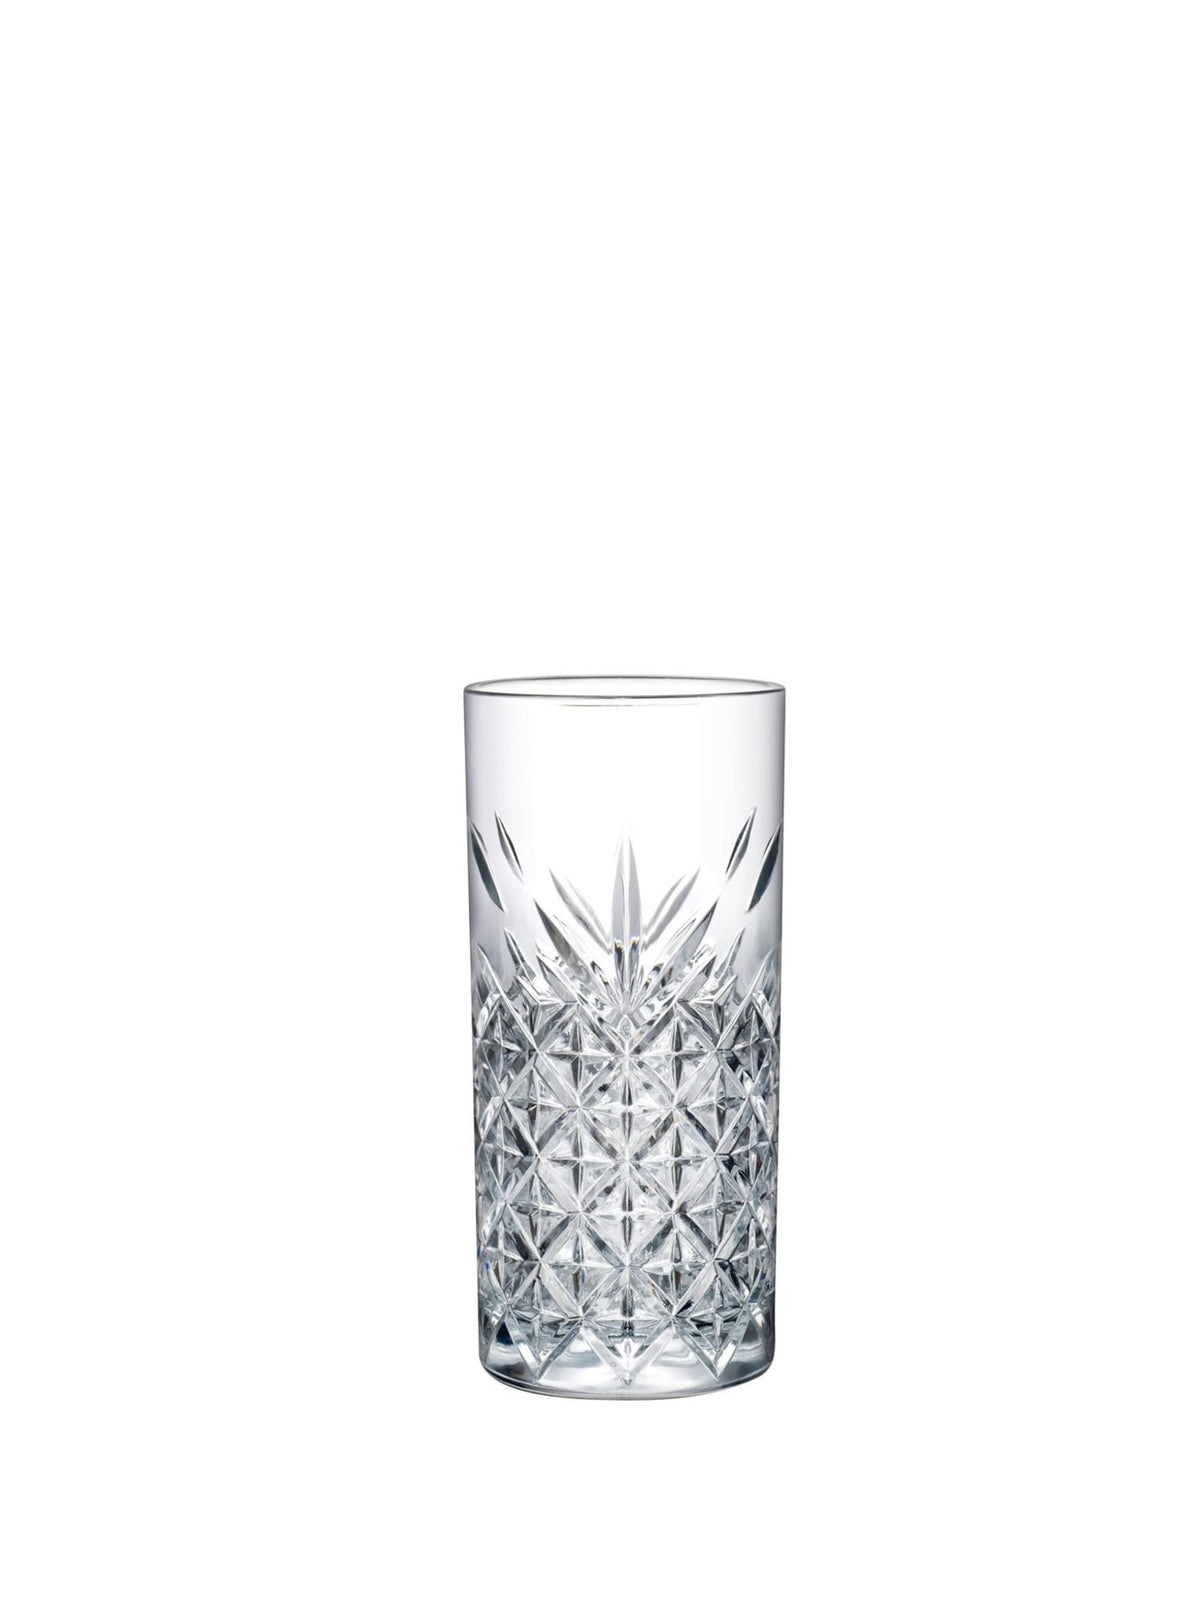 Pasabahce Timeless Longdrink (29,5 cl) - et elegant og tidløst højt glas perfekt til servering af forfriskende longdrinks